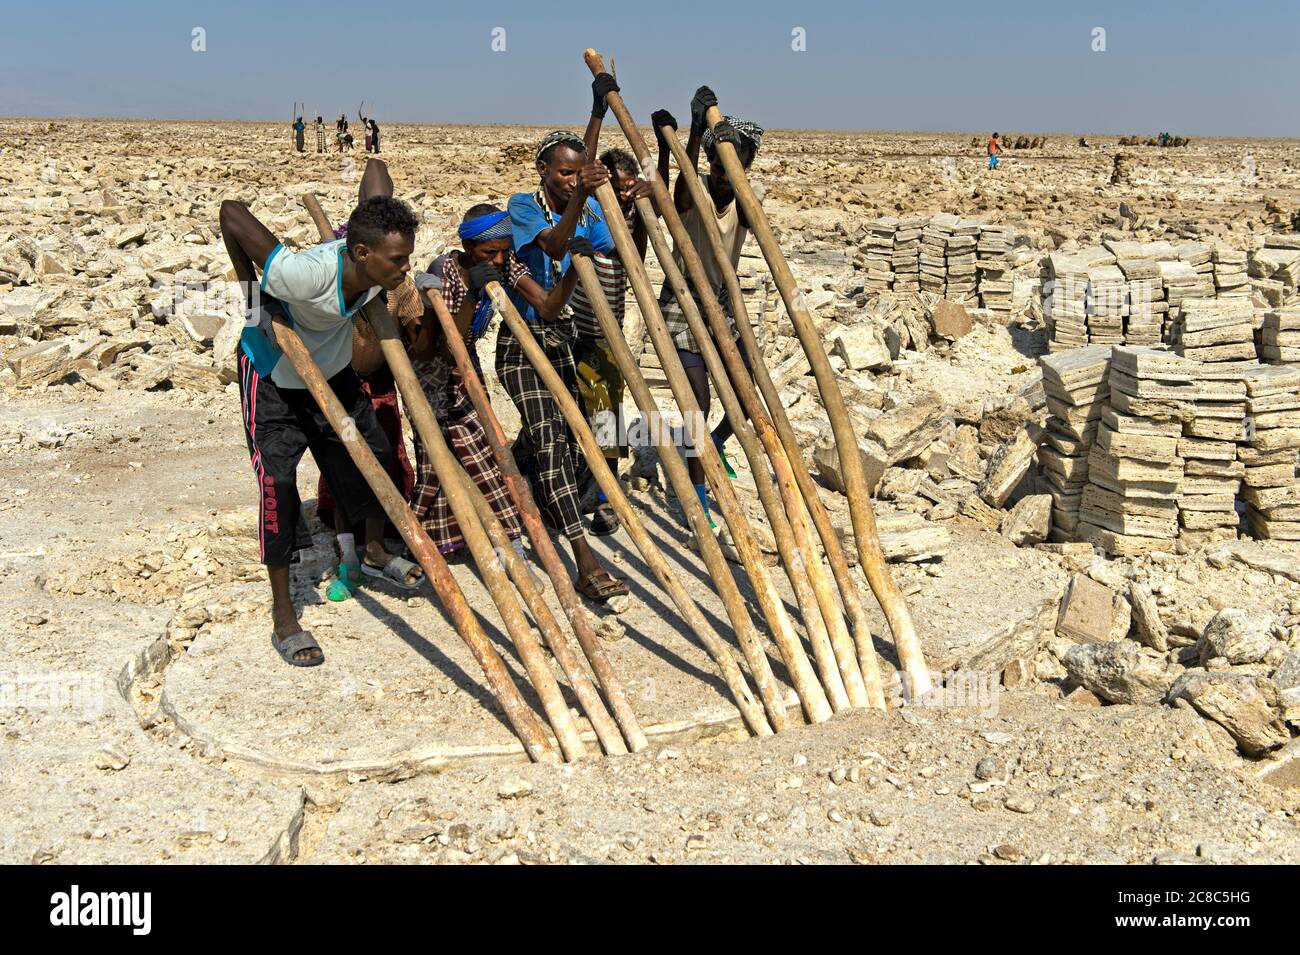 Lavoratori del sale che rompono con le crostate di legno saline blocchi dalla crosta di sale del lago Assale, vicino Hamadela, depressione di Danakil, regione di Afar, Etiopia Foto Stock